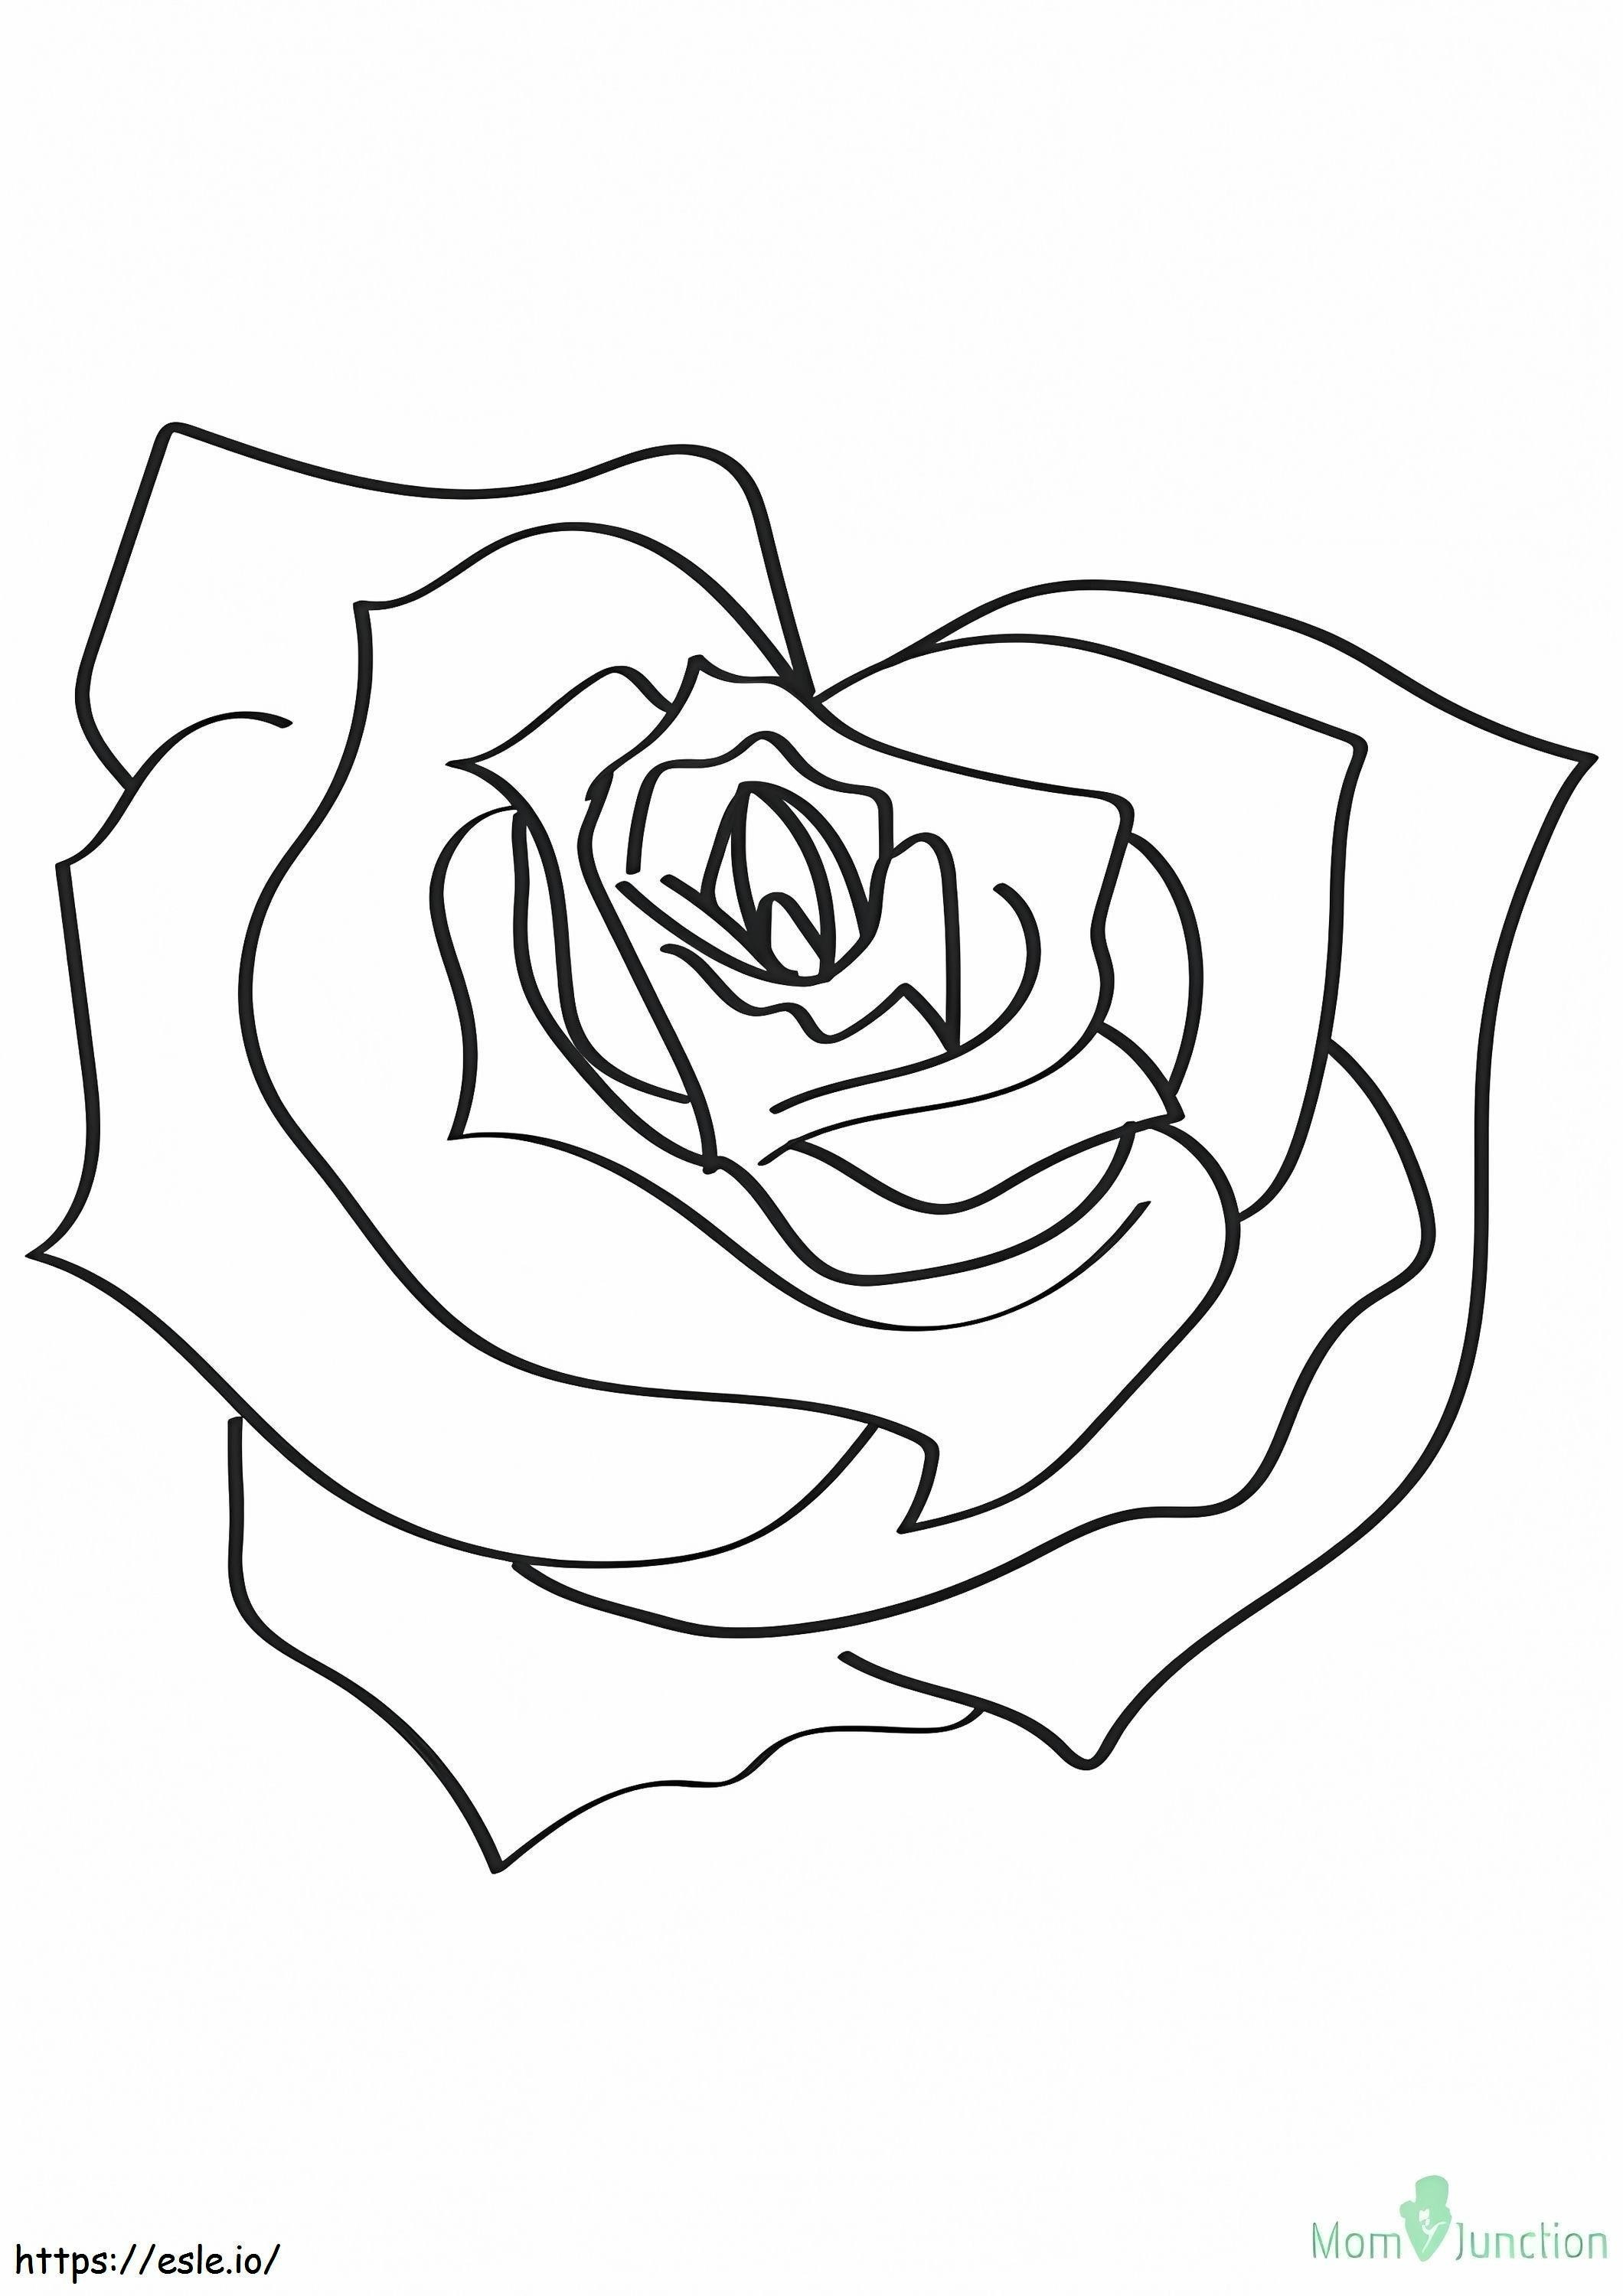 1526201737 De hartvormige roos 16 A4 kleurplaat kleurplaat